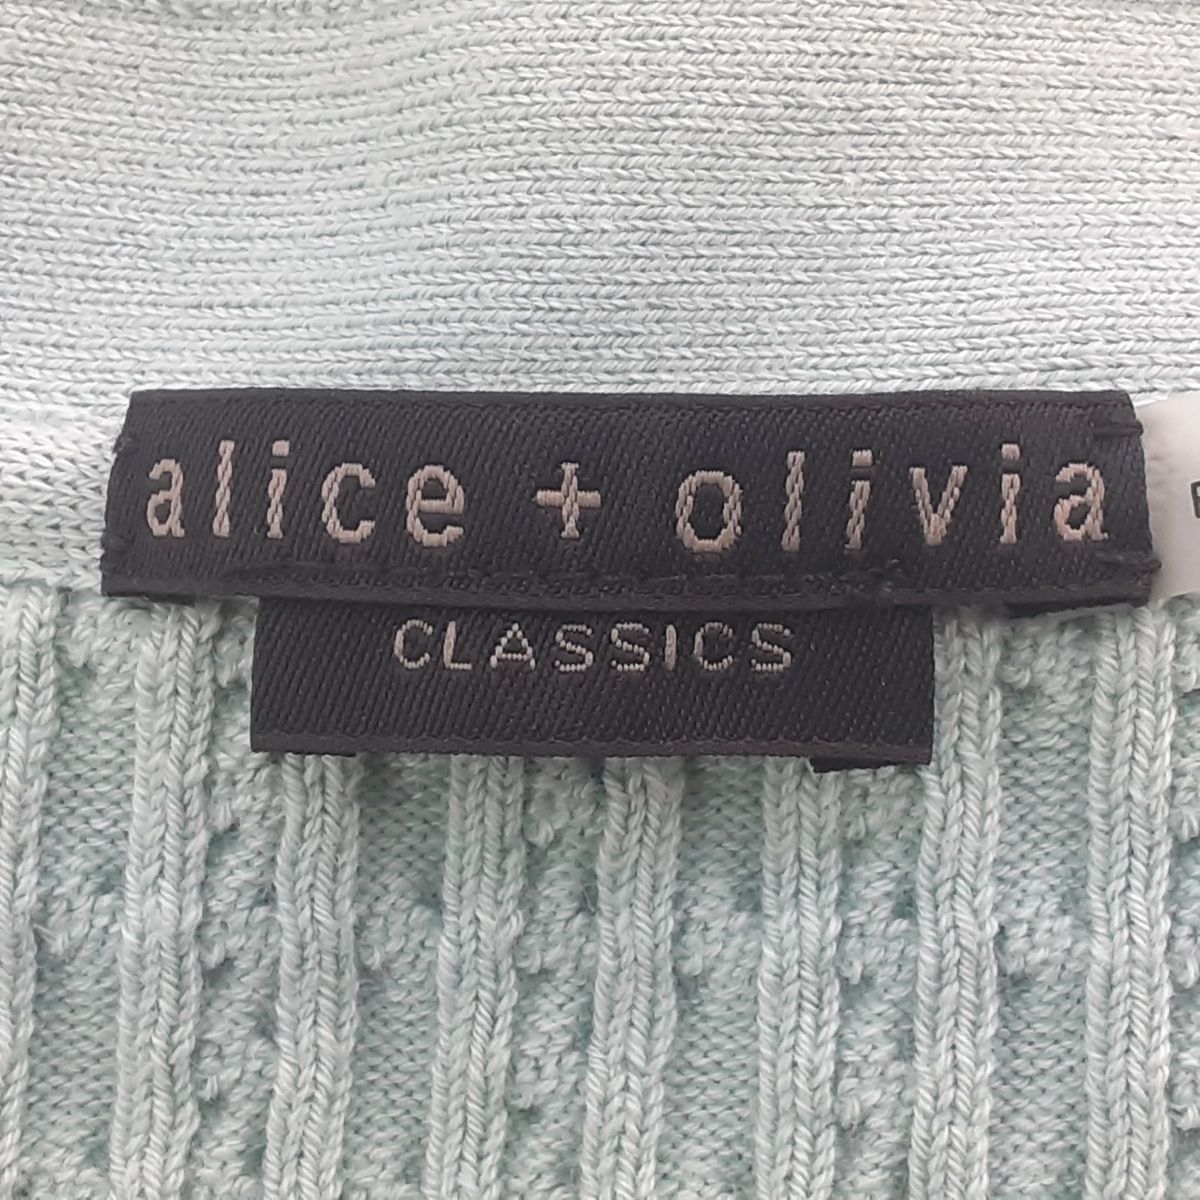 alice+olivia(アリスオリビア) カーディガン サイズS レディース美品 - ライトグリーン 長袖